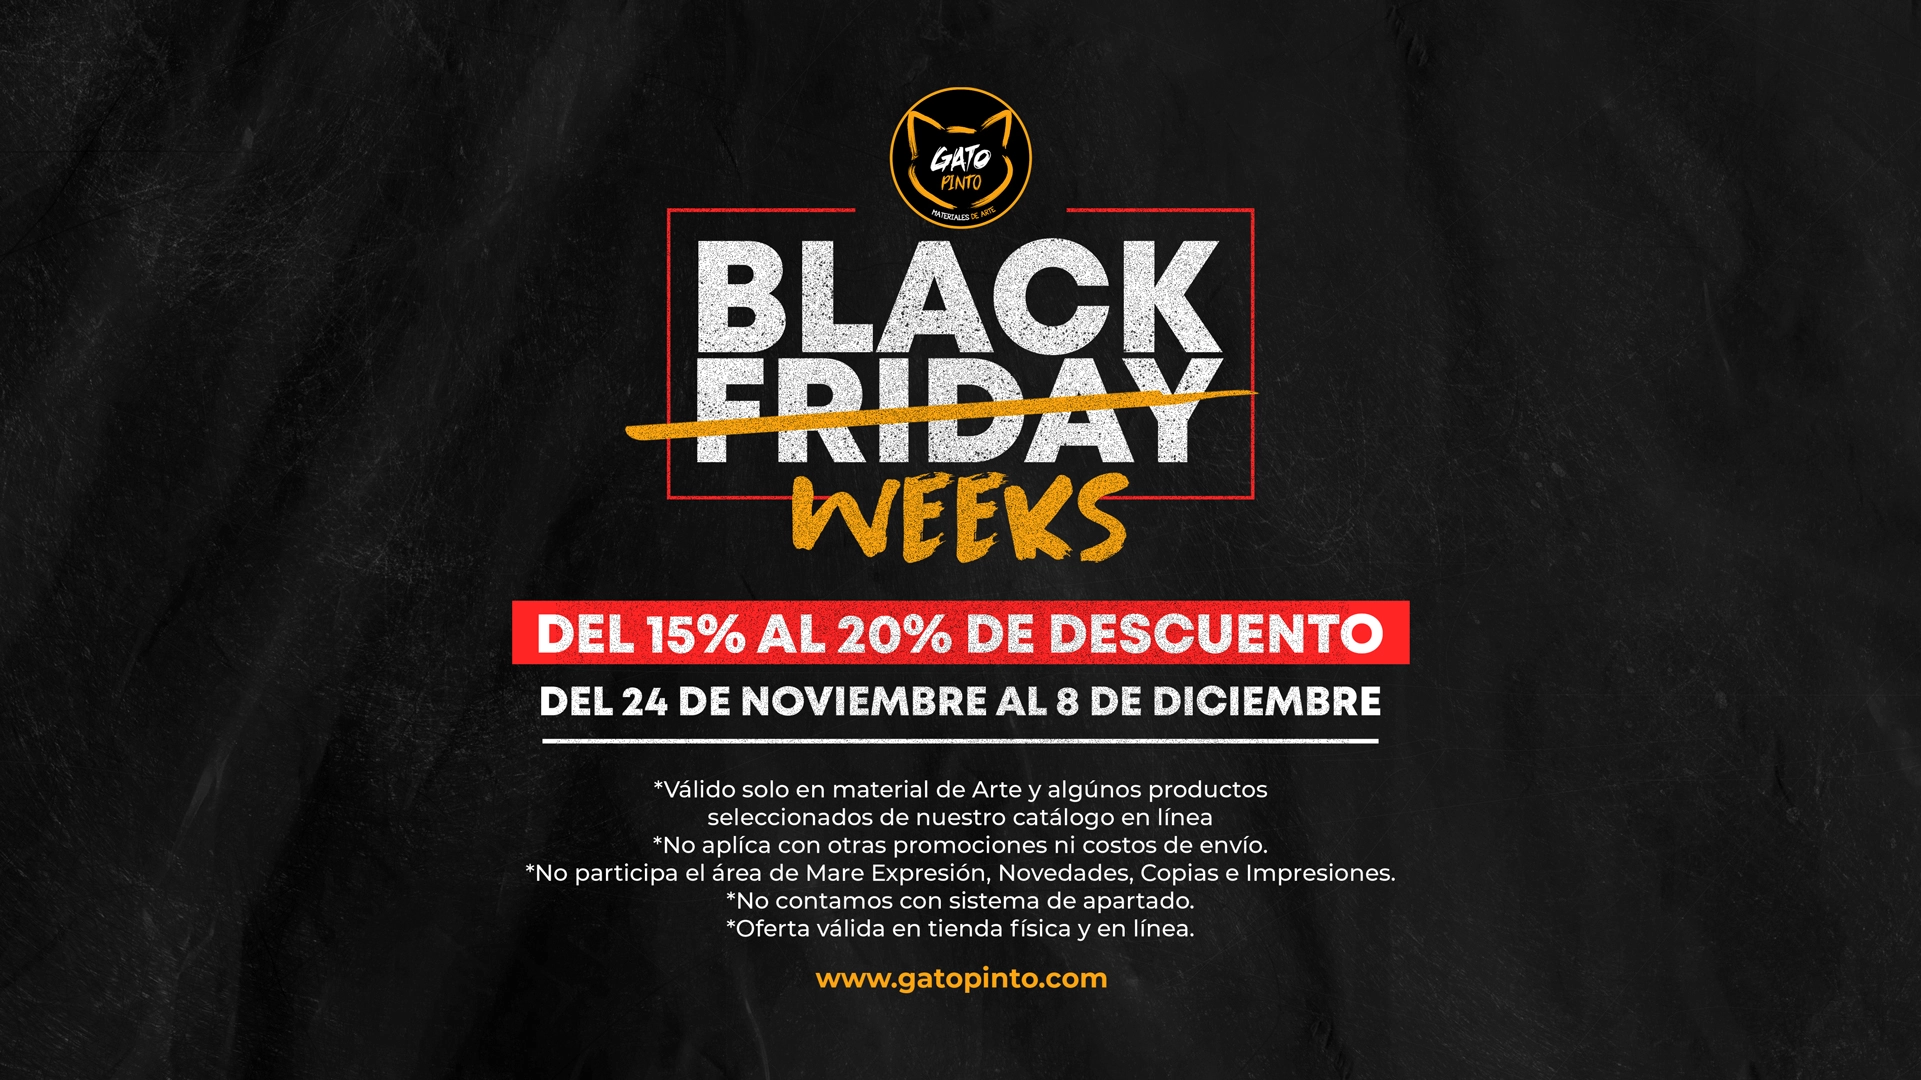 Gato Pinto Celebra las Black Weeks con Ofertas Únicas en Materiales de Arte!